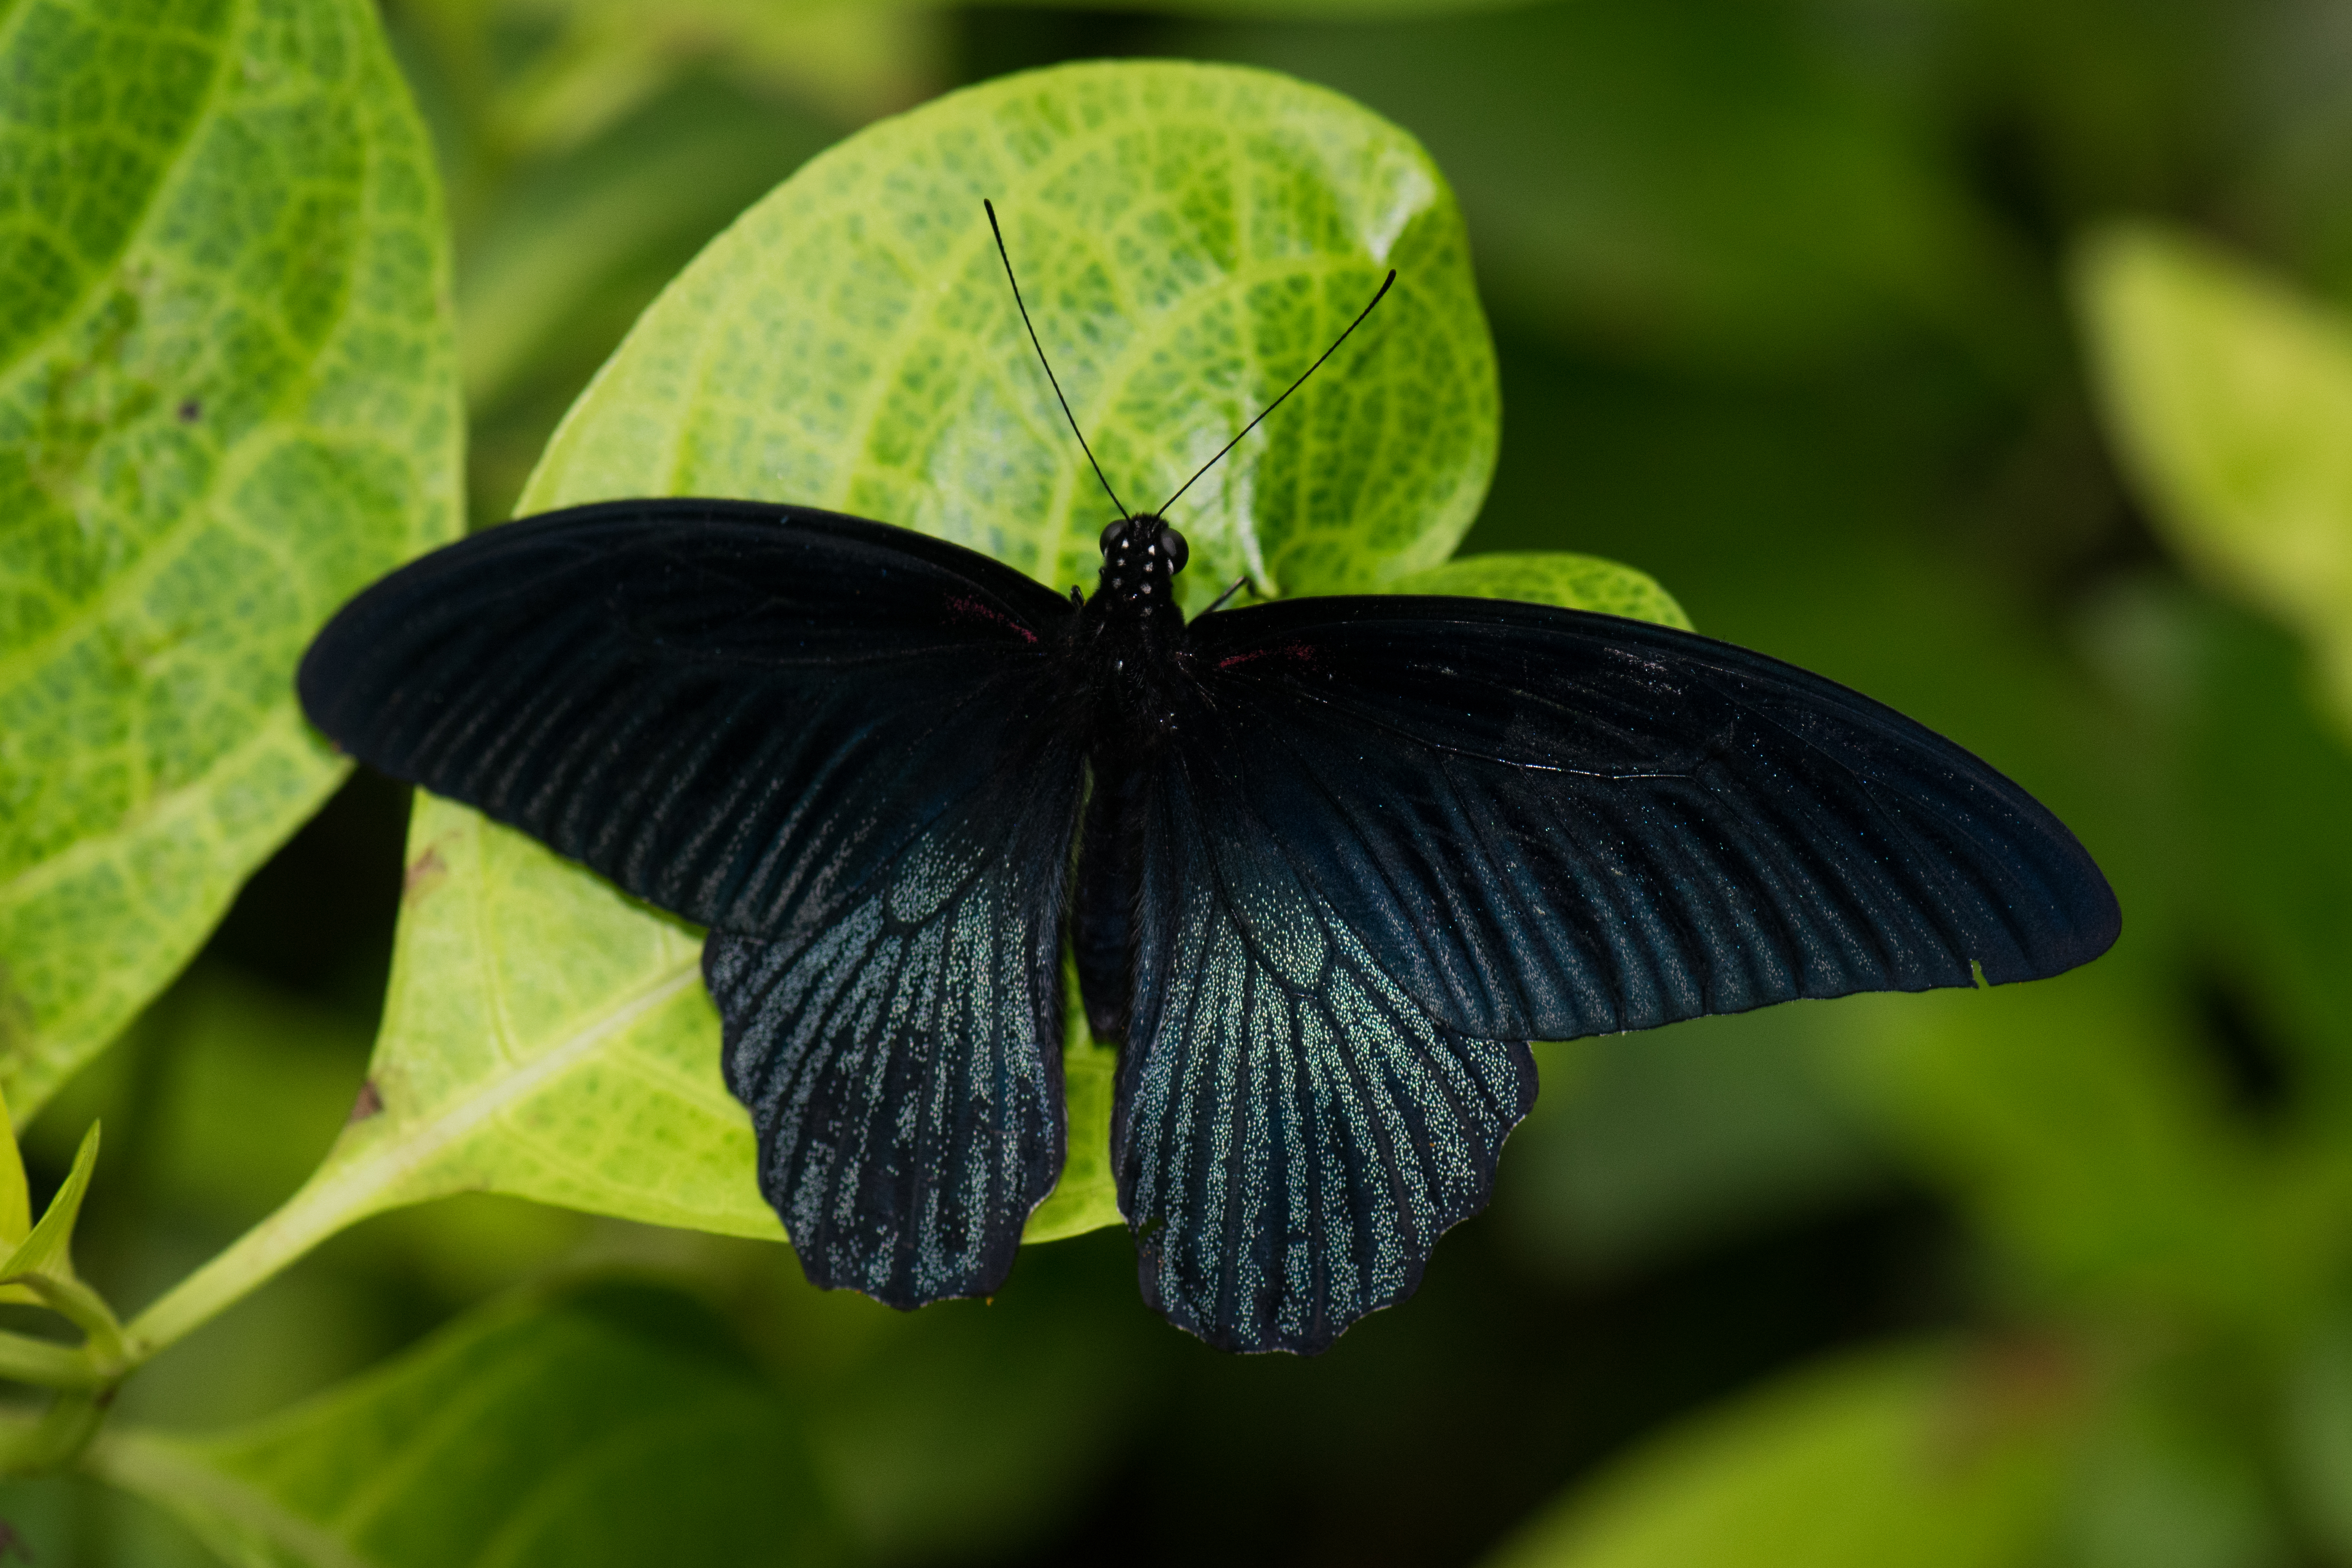 File:Black butterfly wingspread (25102112795).jpg - Wikimedia Commons